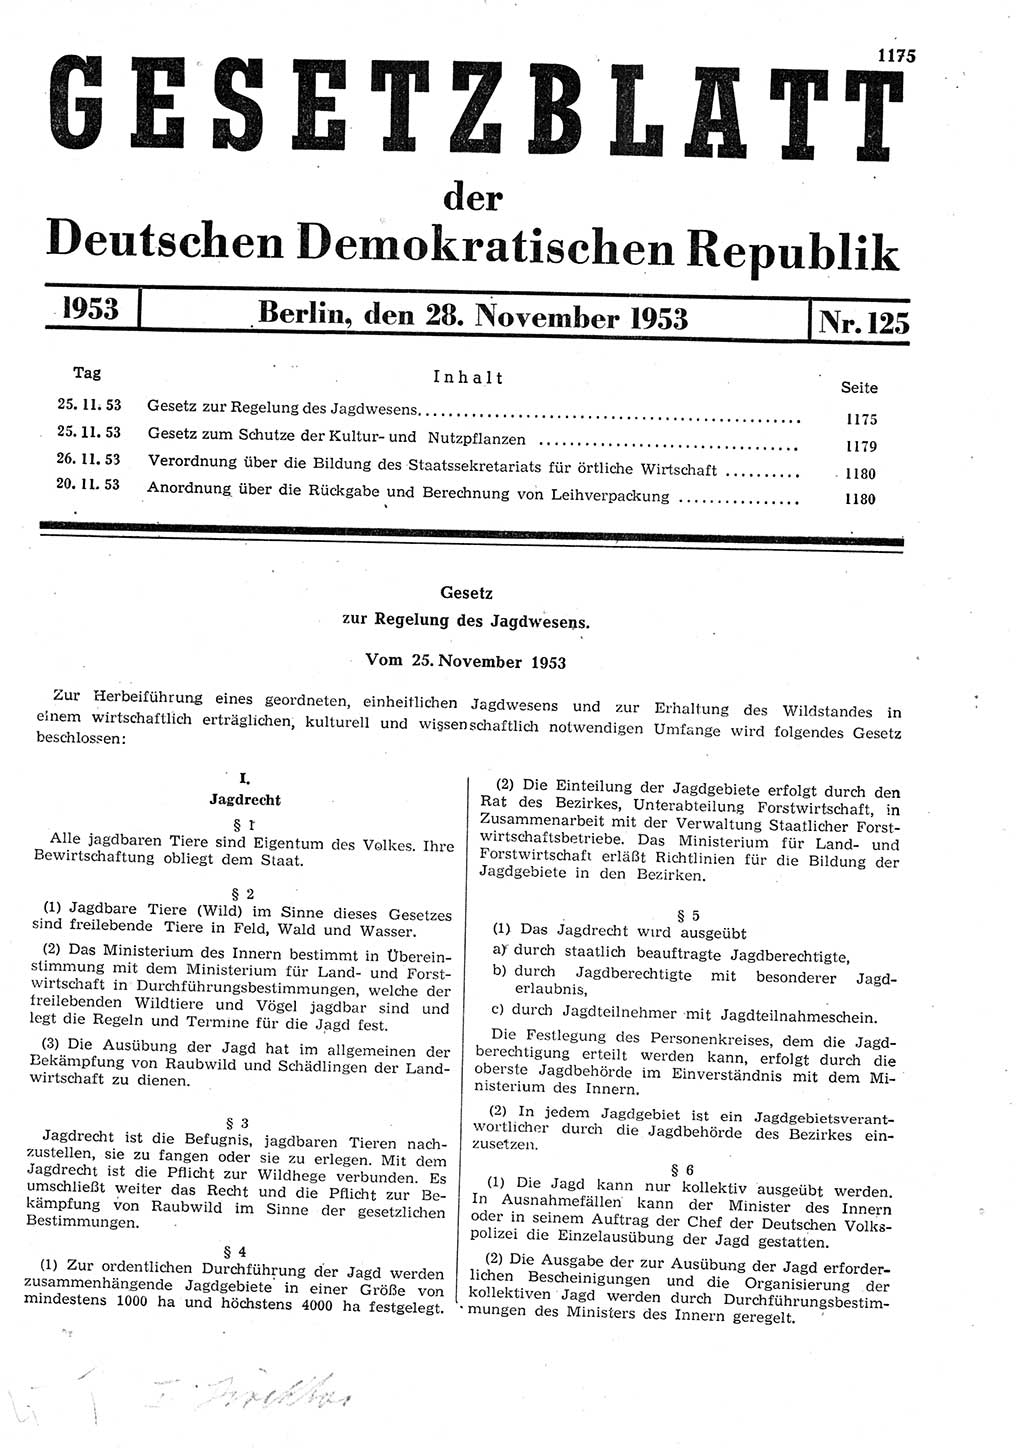 Gesetzblatt (GBl.) der Deutschen Demokratischen Republik (DDR) 1953, Seite 1175 (GBl. DDR 1953, S. 1175)